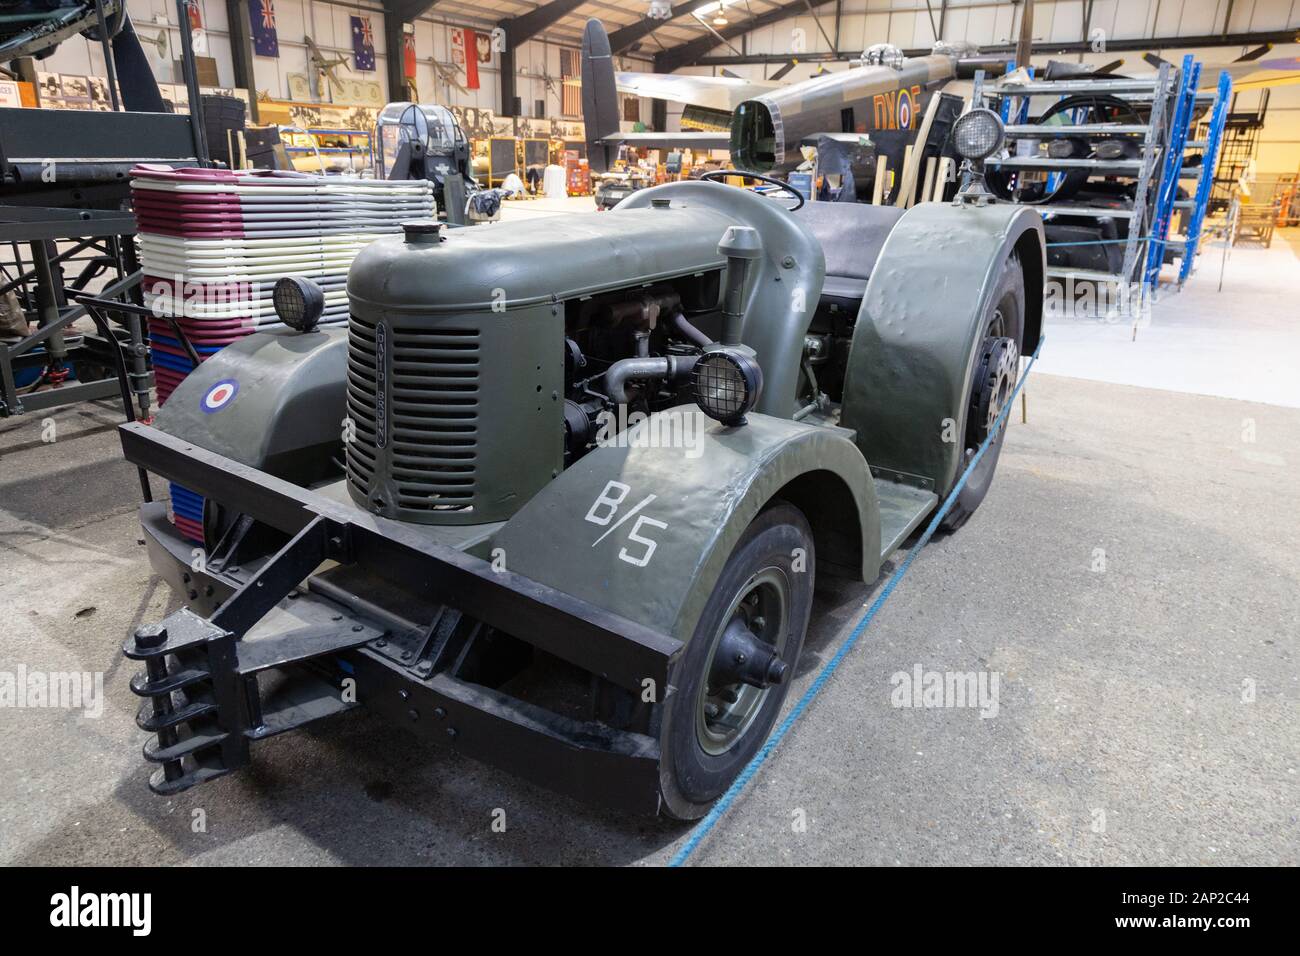 Ein alter David Brown-Traktor, der im zweiten Weltkrieg zum ziehen von Flugzeugen und Bomben um Flugplätze, das Lincoln shire Aviation Museum, East Kirkby Lincoln, UK, verwendet wurde Stockfoto